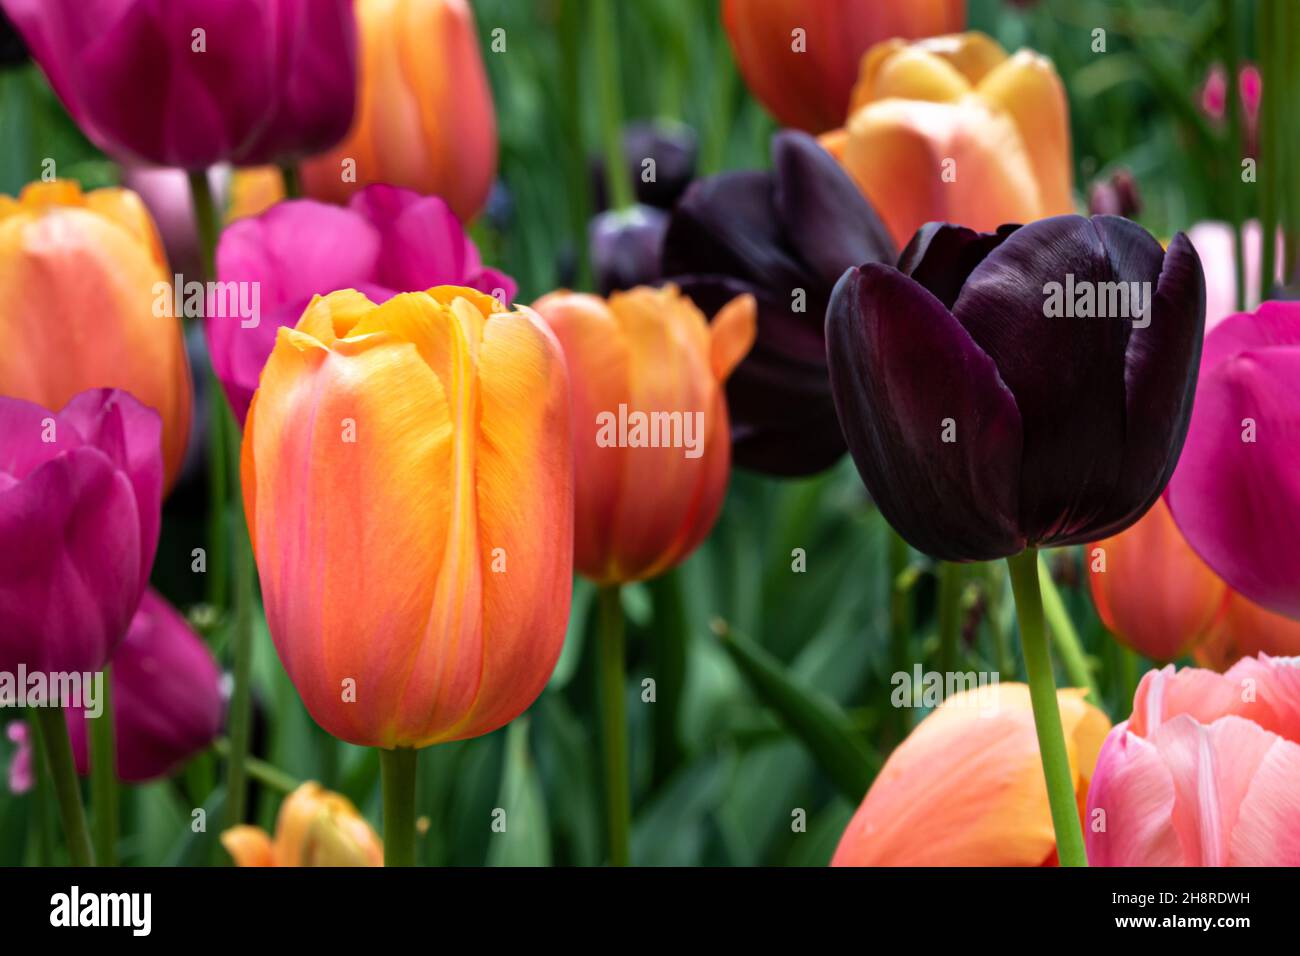 Gros plan de tulipes, grande variété de couleurs.Plantes vertes en arrière-plan.Jardin botanique du Missouri, St. Louis, Missouri. Banque D'Images